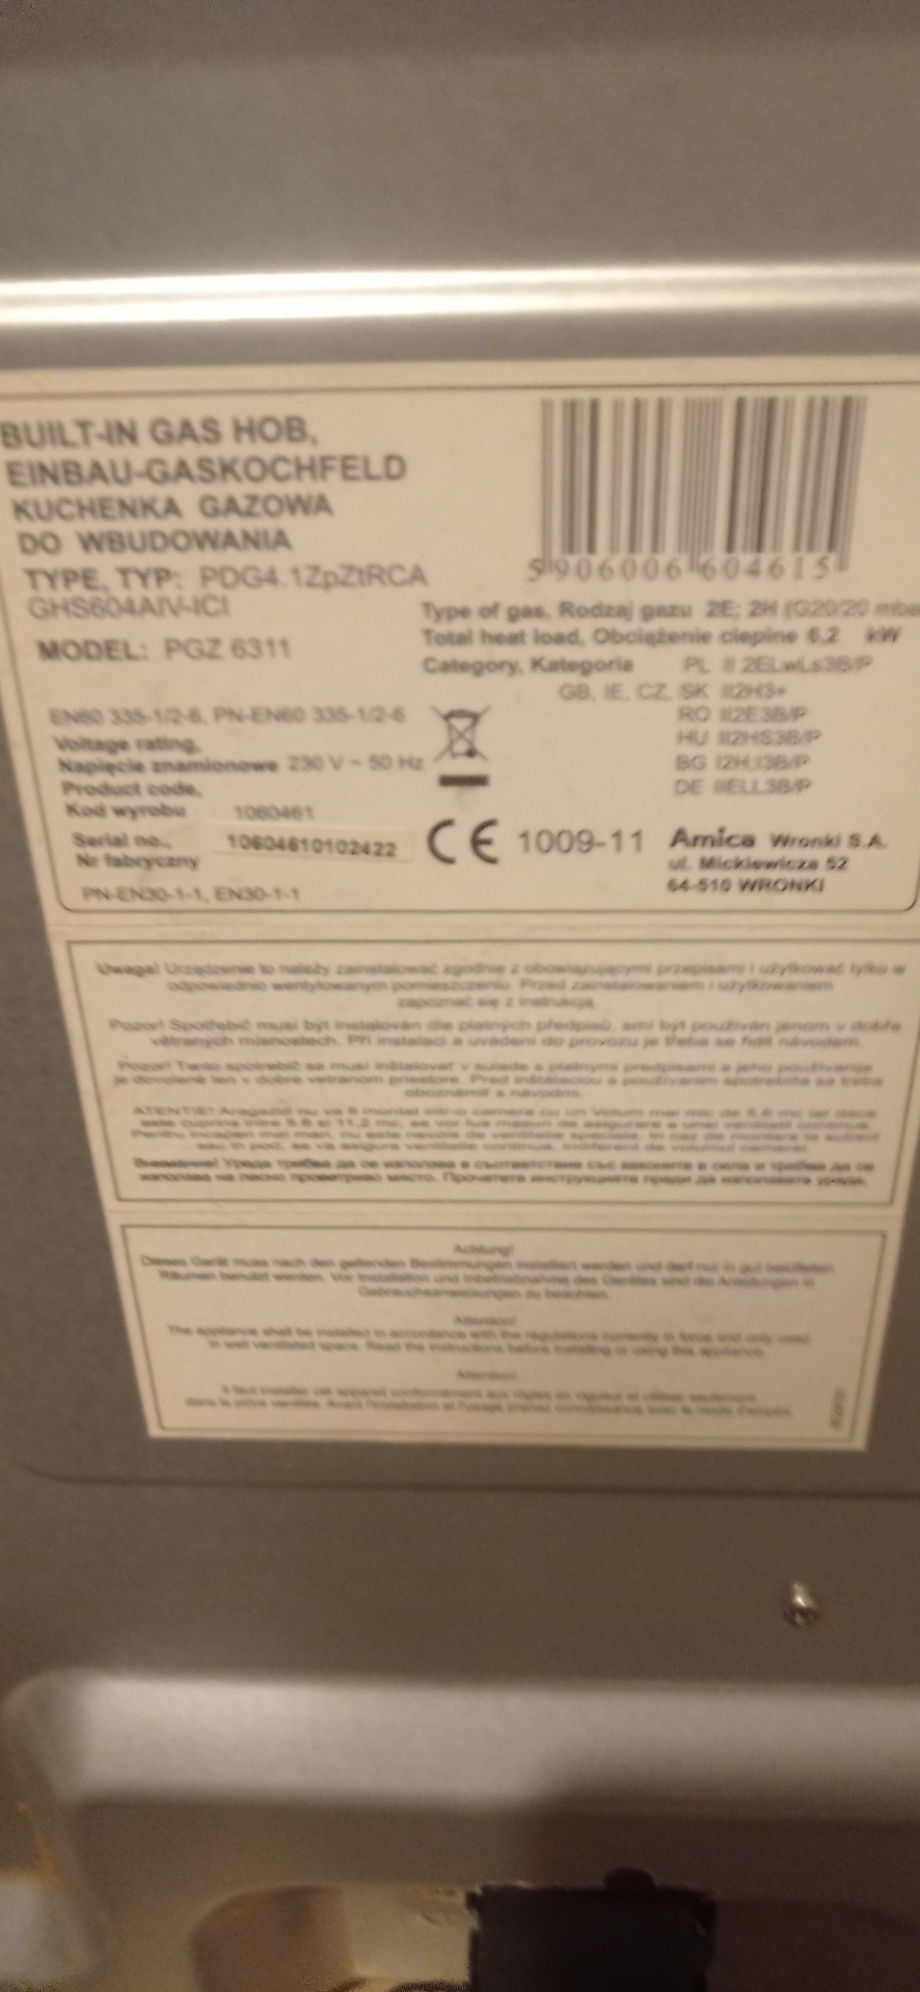 Płyta gazowa Amica PGZ6311 59x52 cm